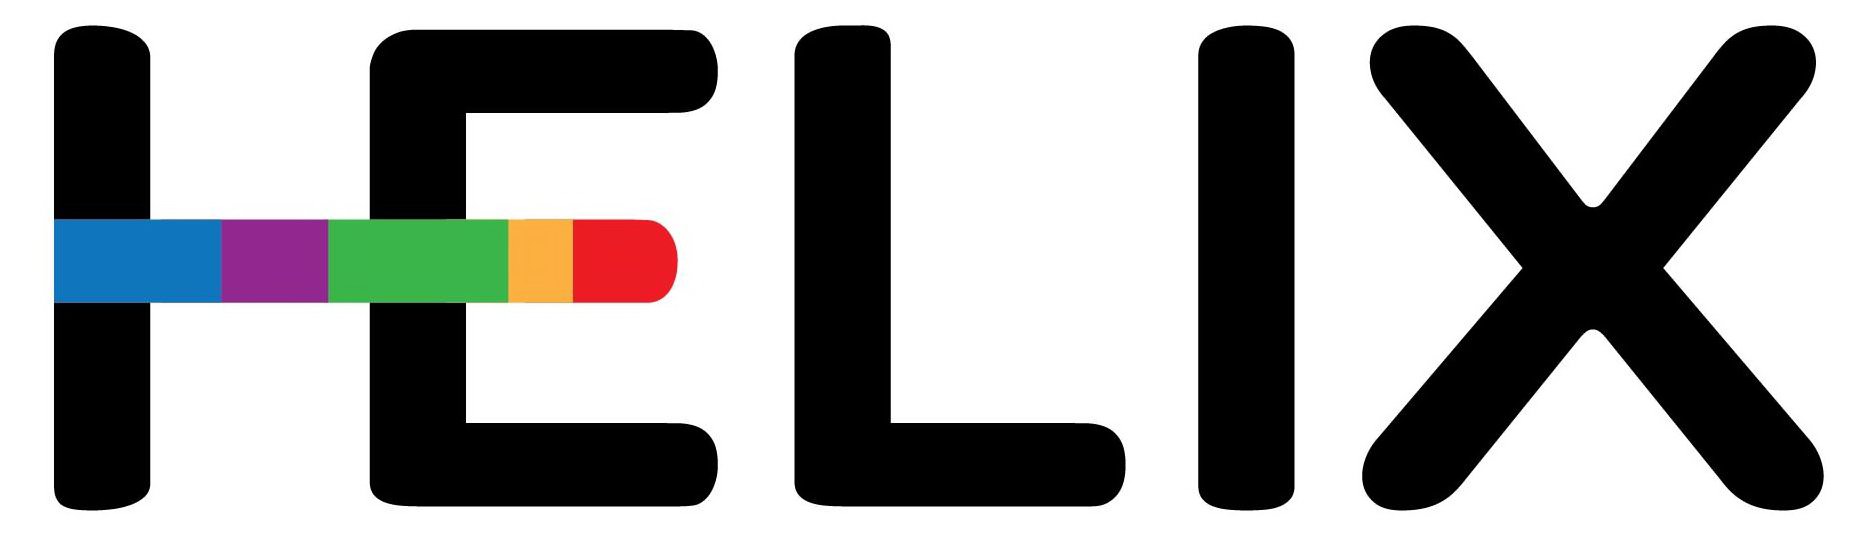 Trademark Logo HELIX